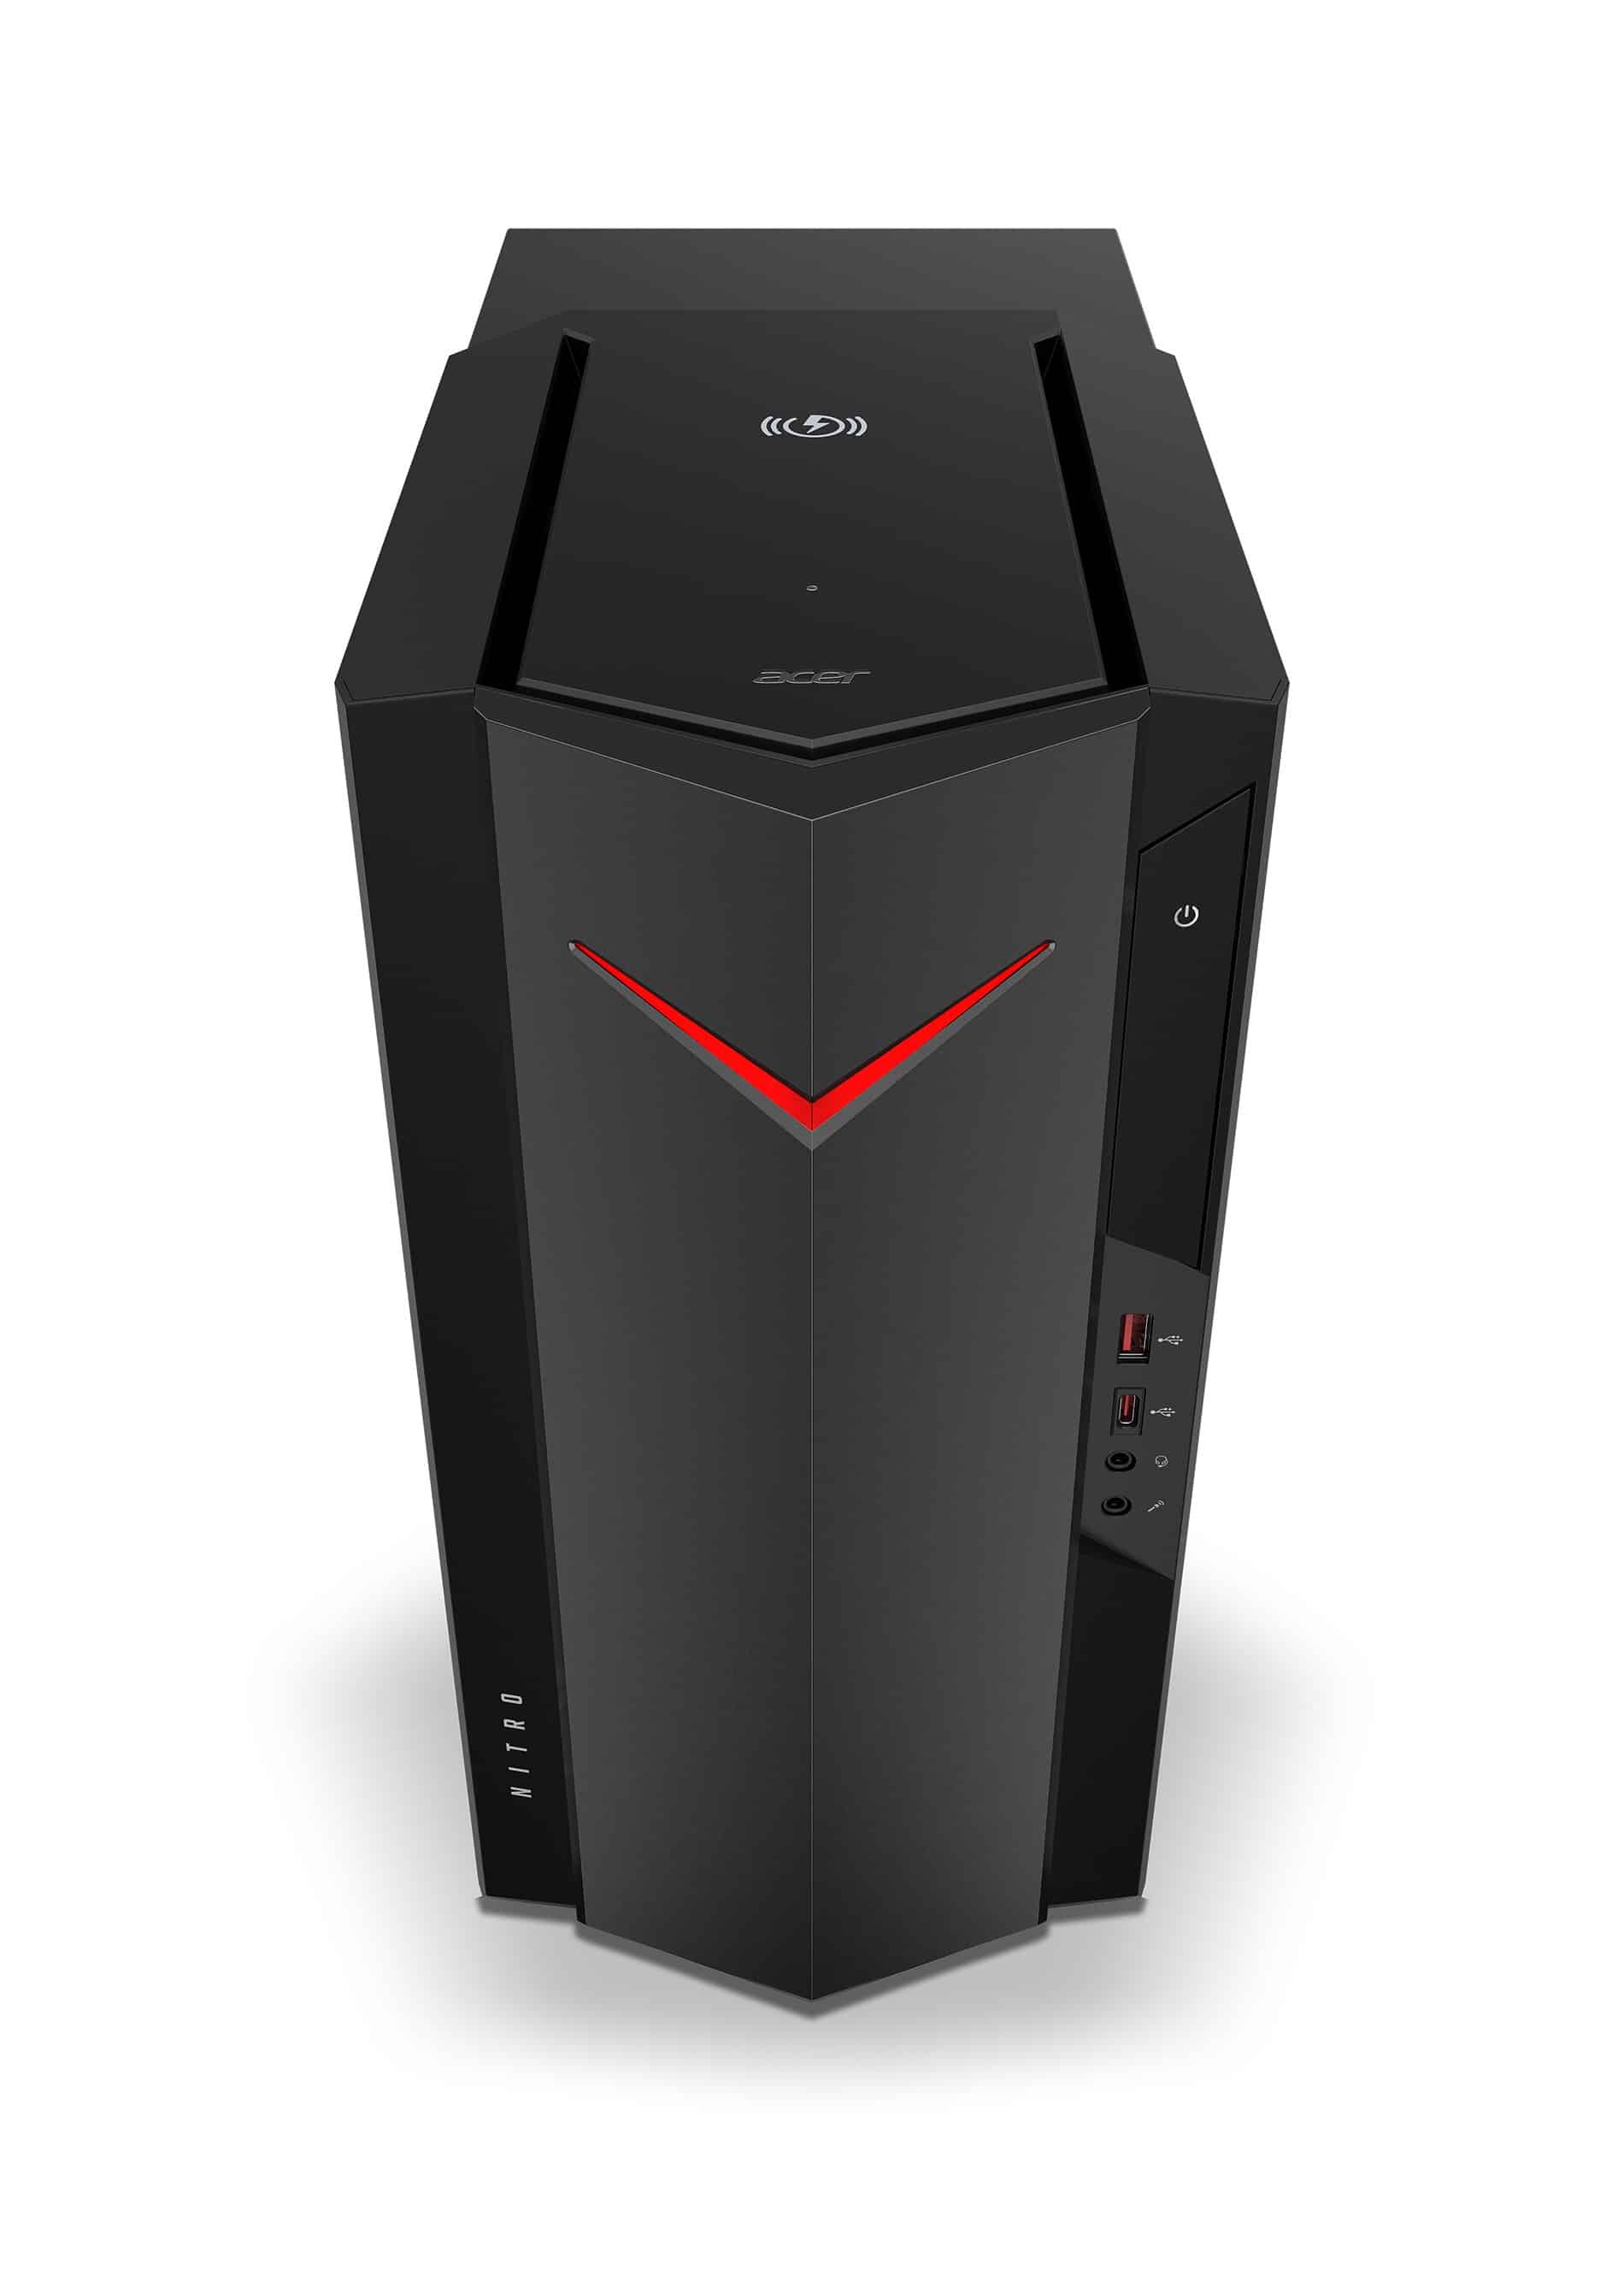 Acer Predator Orion ve Nitro oyun bilgisayarlarını yeniledi